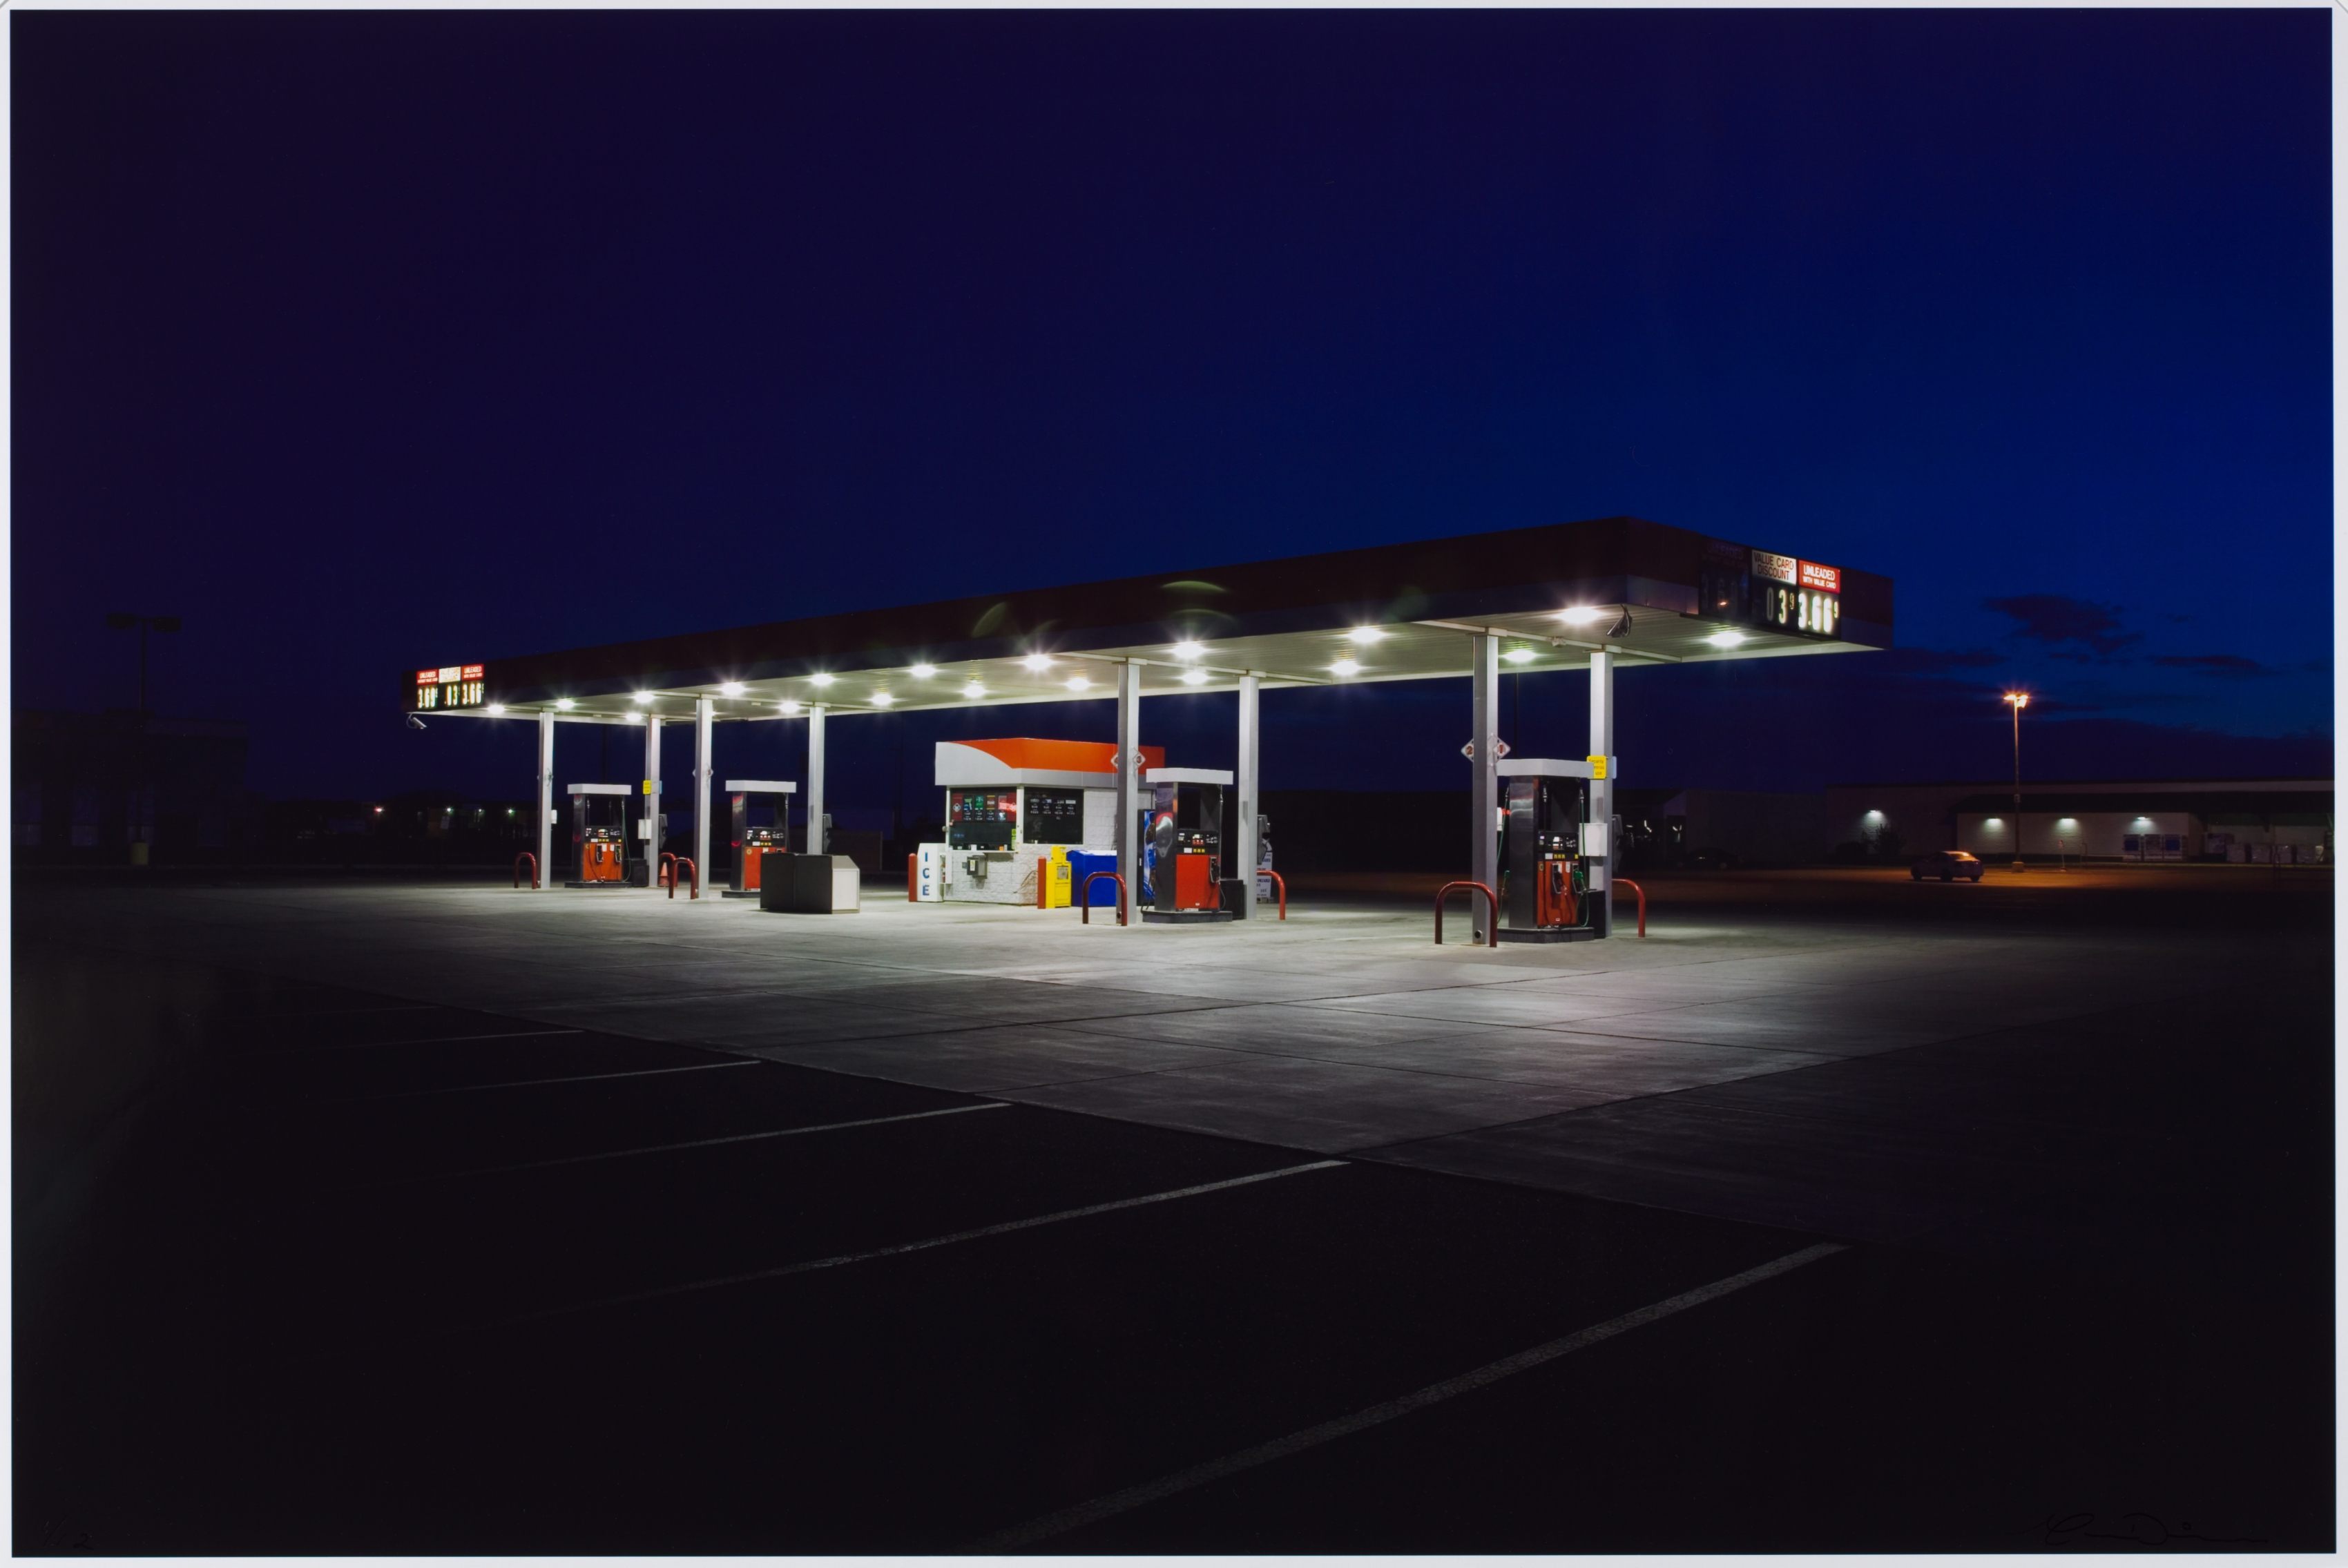 New Mexico Gas Station, Alamogordo, New Mexico